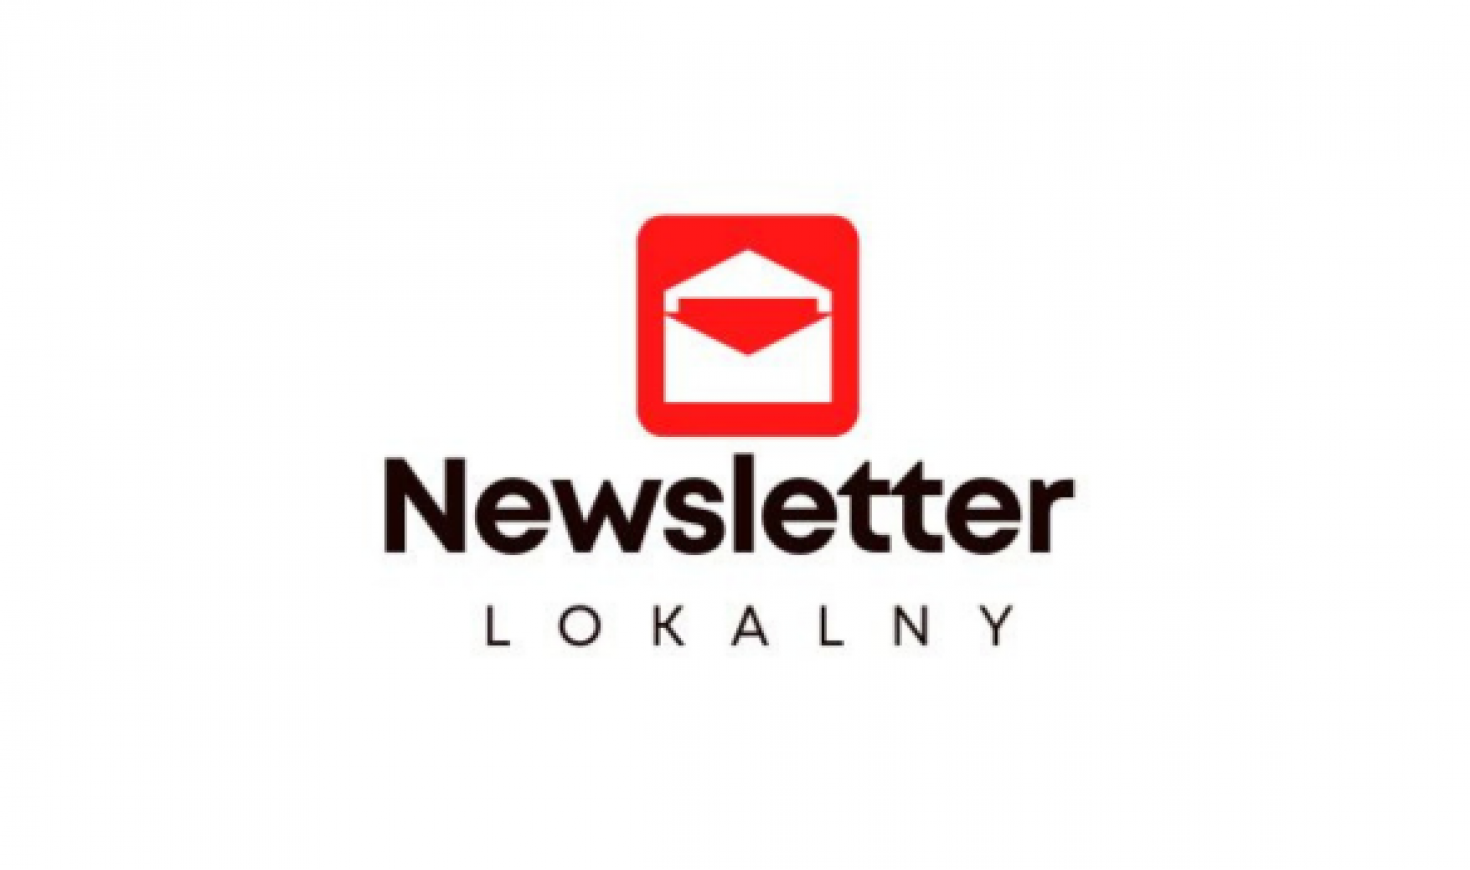 Newsletter lokalny logo